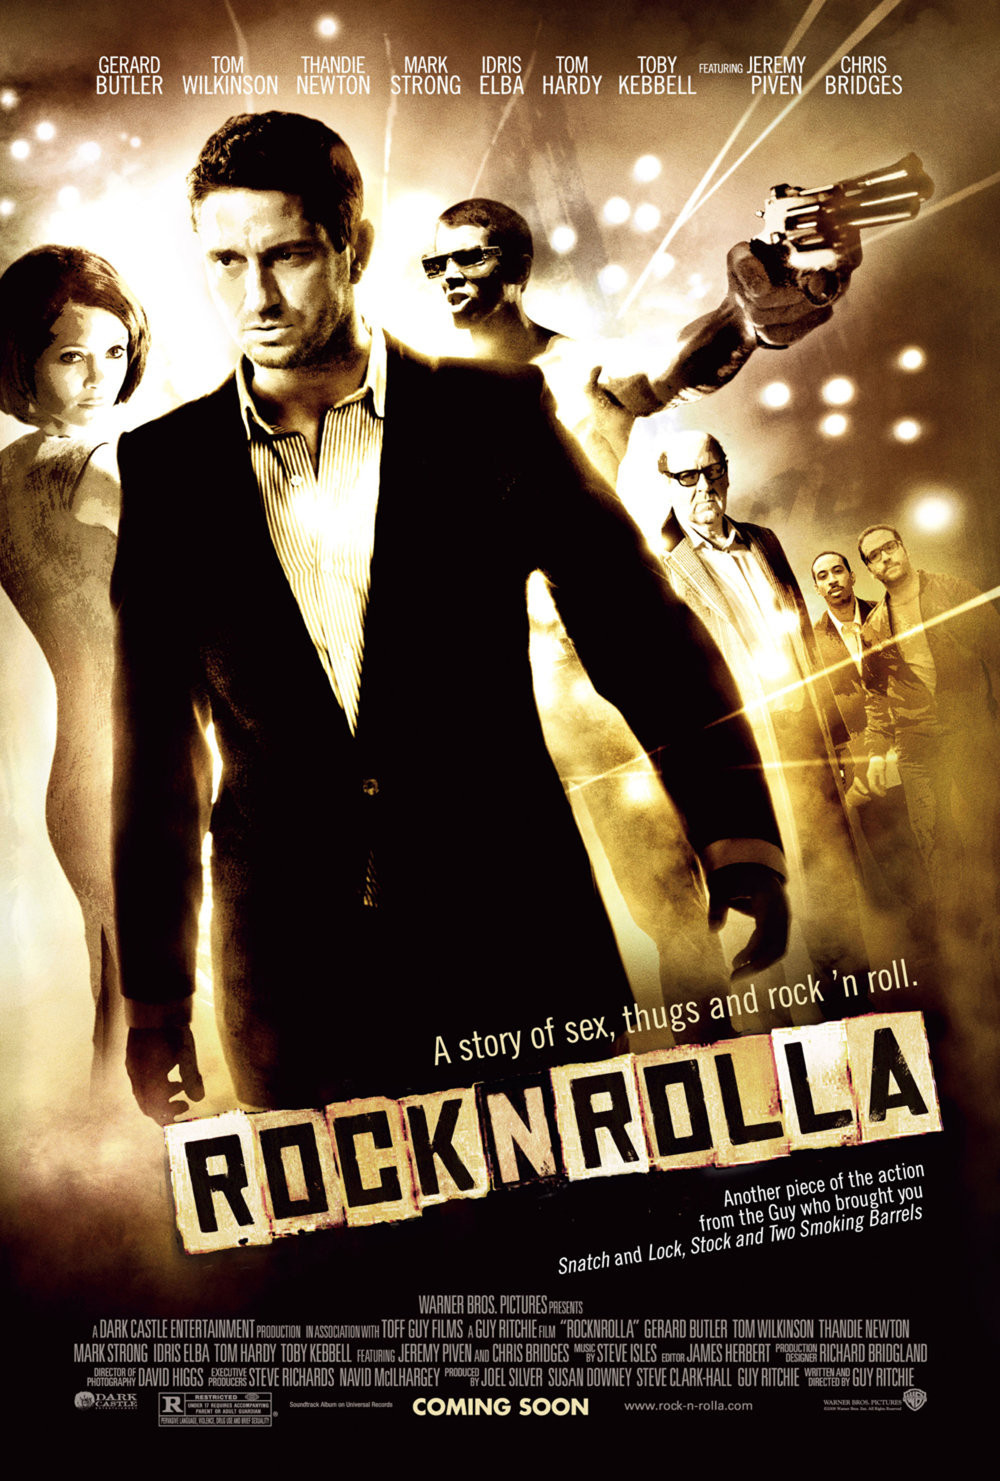 摇滚黑帮 蓝光原盘下载+高清MKV版/摇滚帮 2008 RocknRolla 24.4G